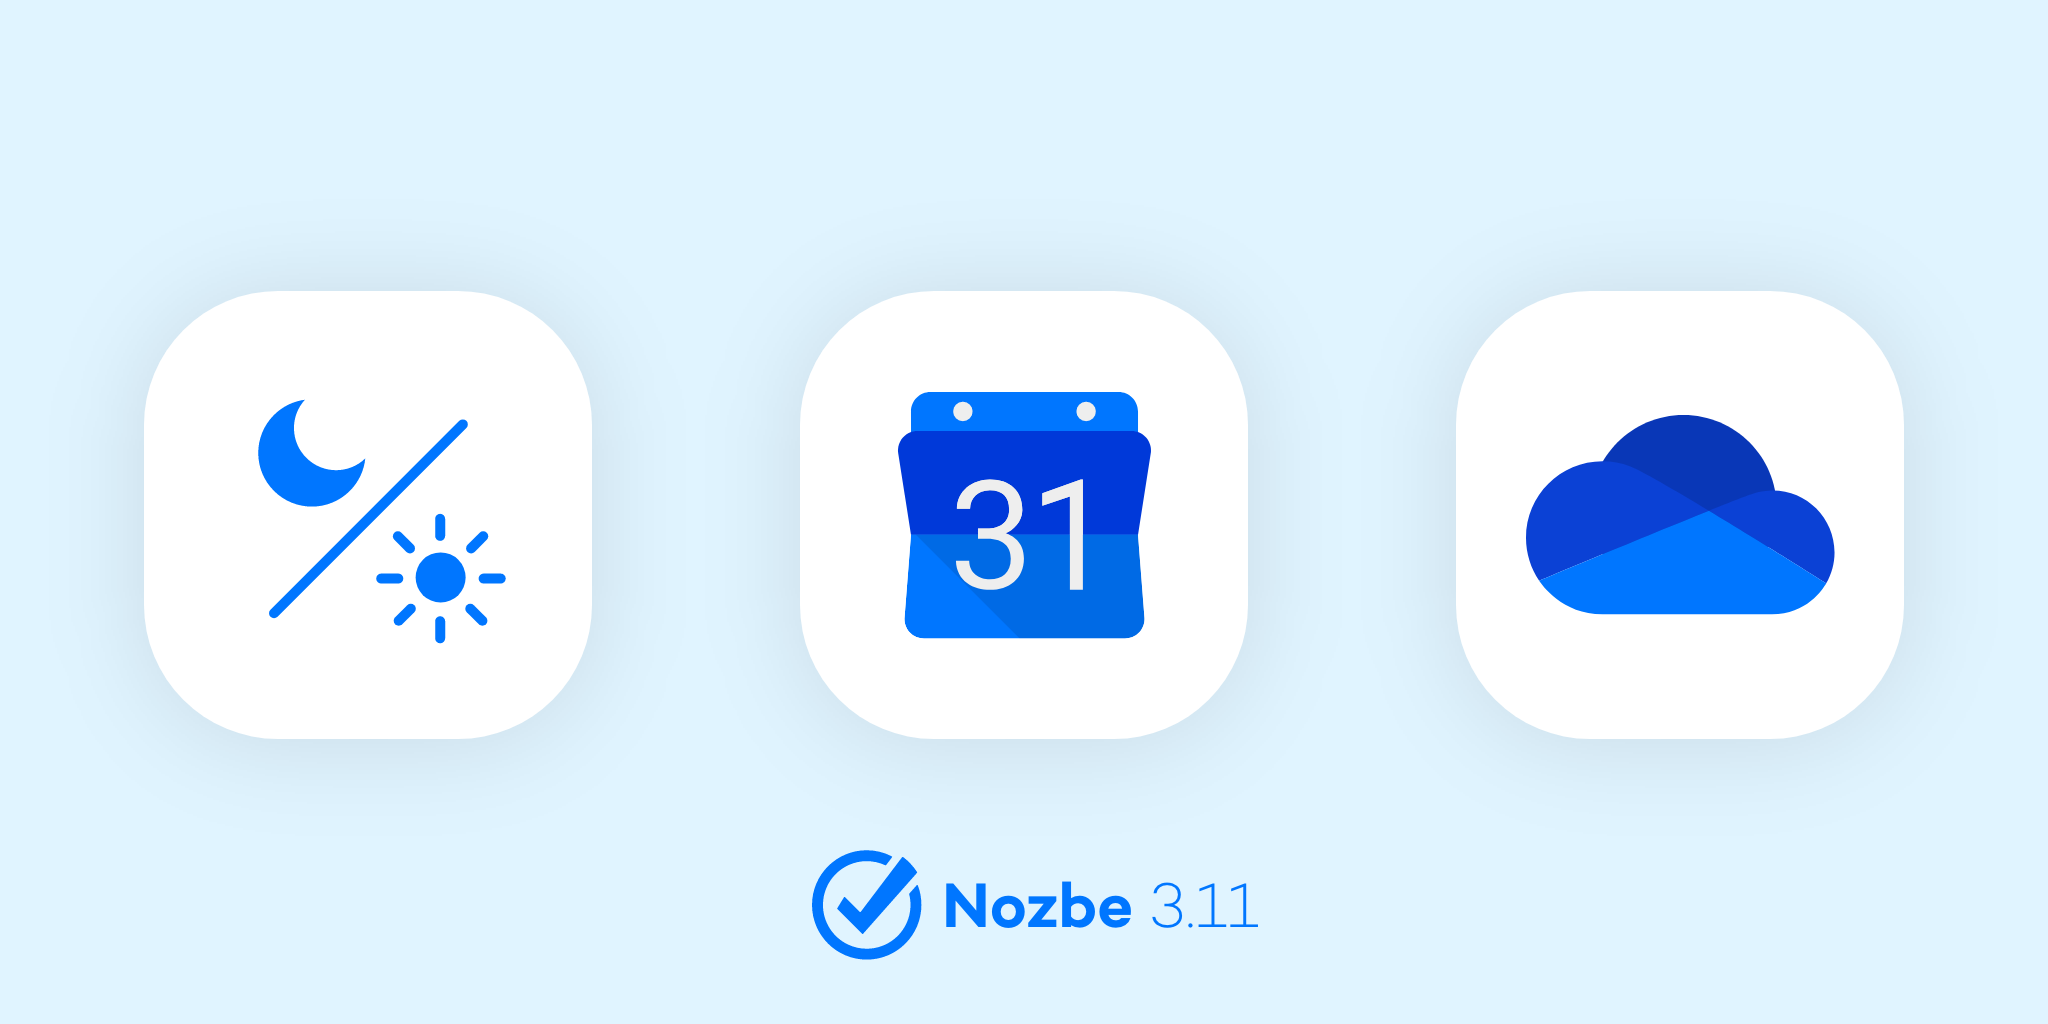 What's new in Nozbe - December 2019